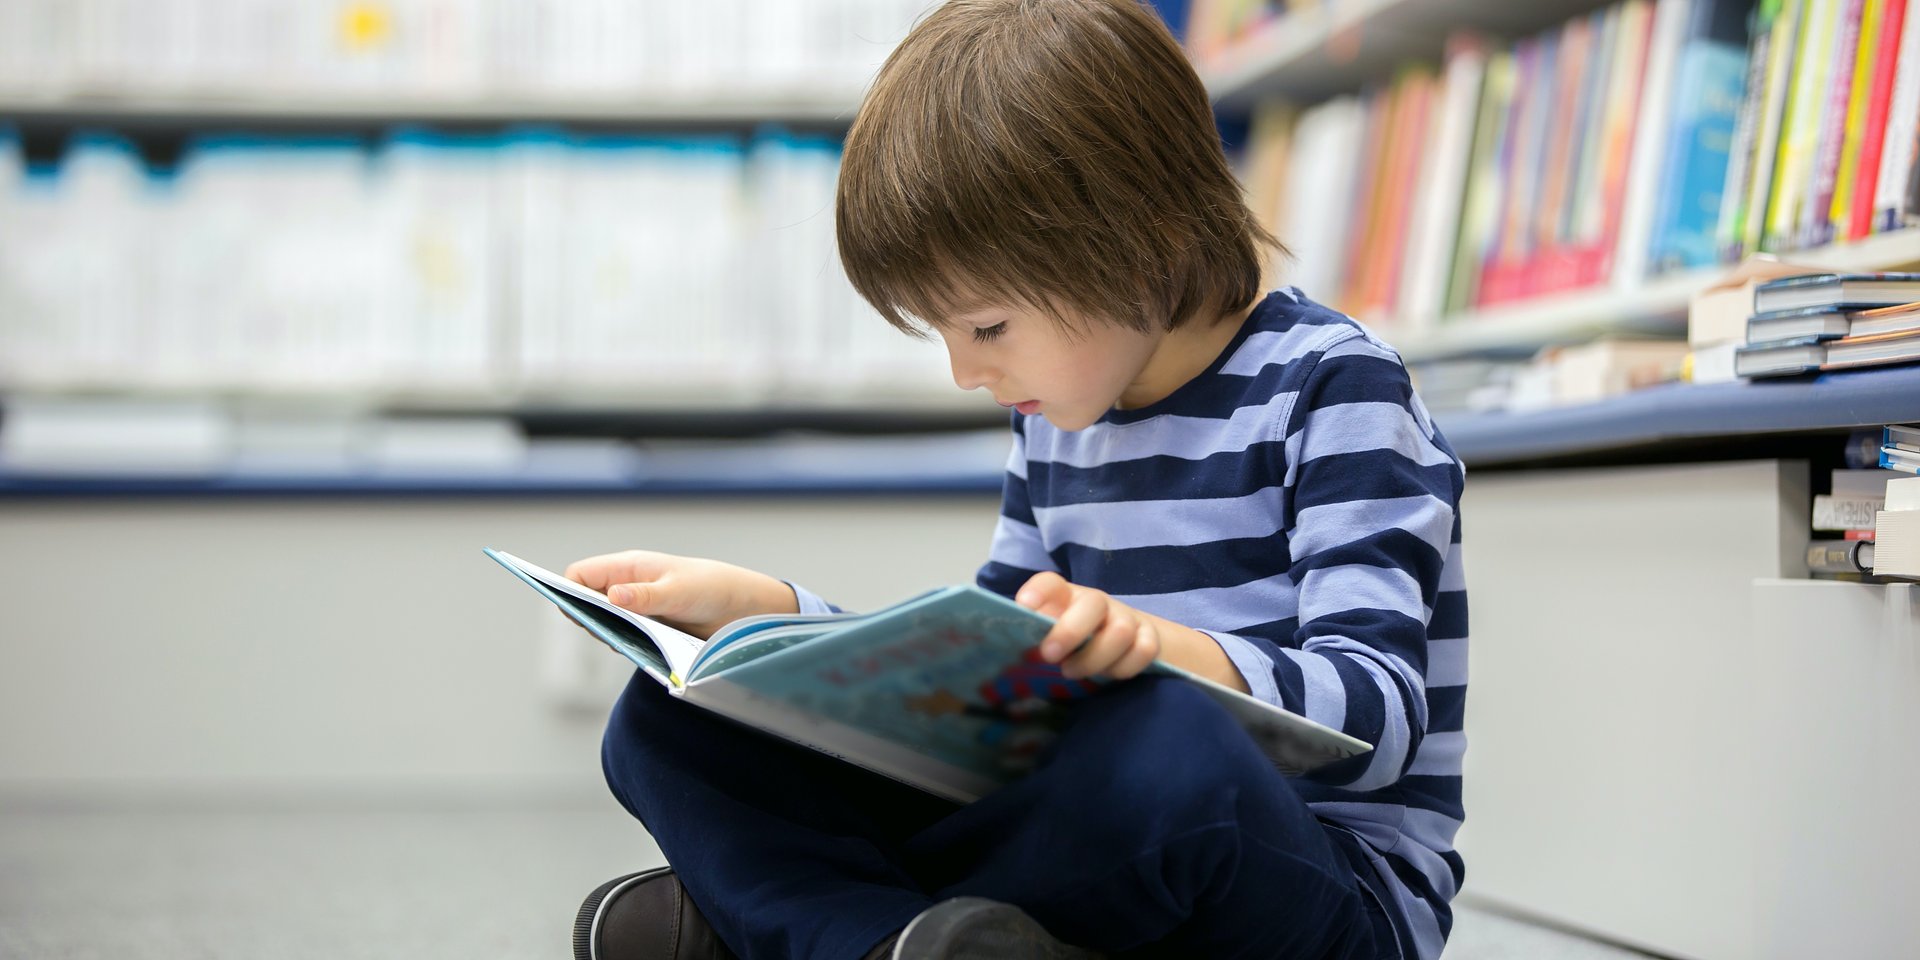 Aż 90% małych dzieci ma regularny kontakt z książkami - wyniki badania Empiku